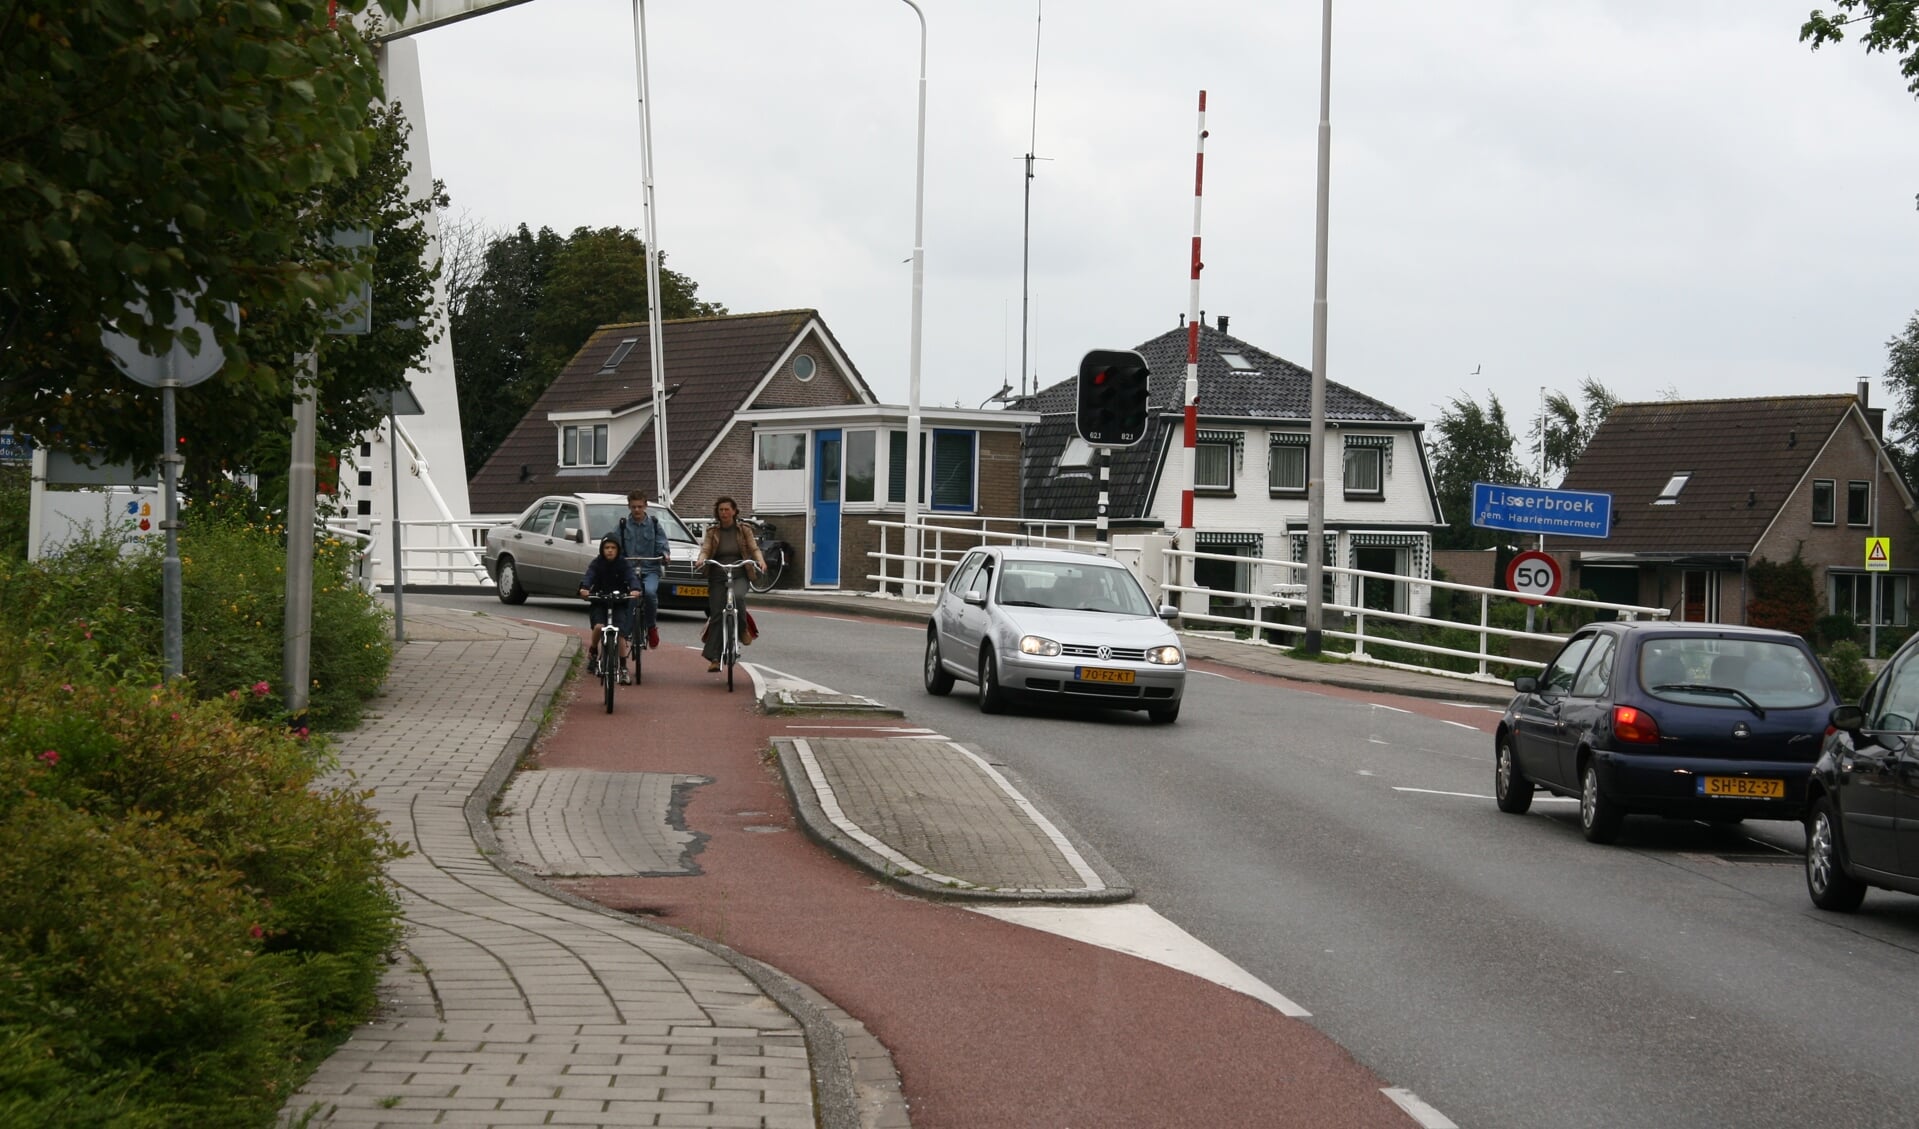 Er is een plan van aanpak gemaakt met verkeersmaatregelen die ook de Lisserbrug betreffen.